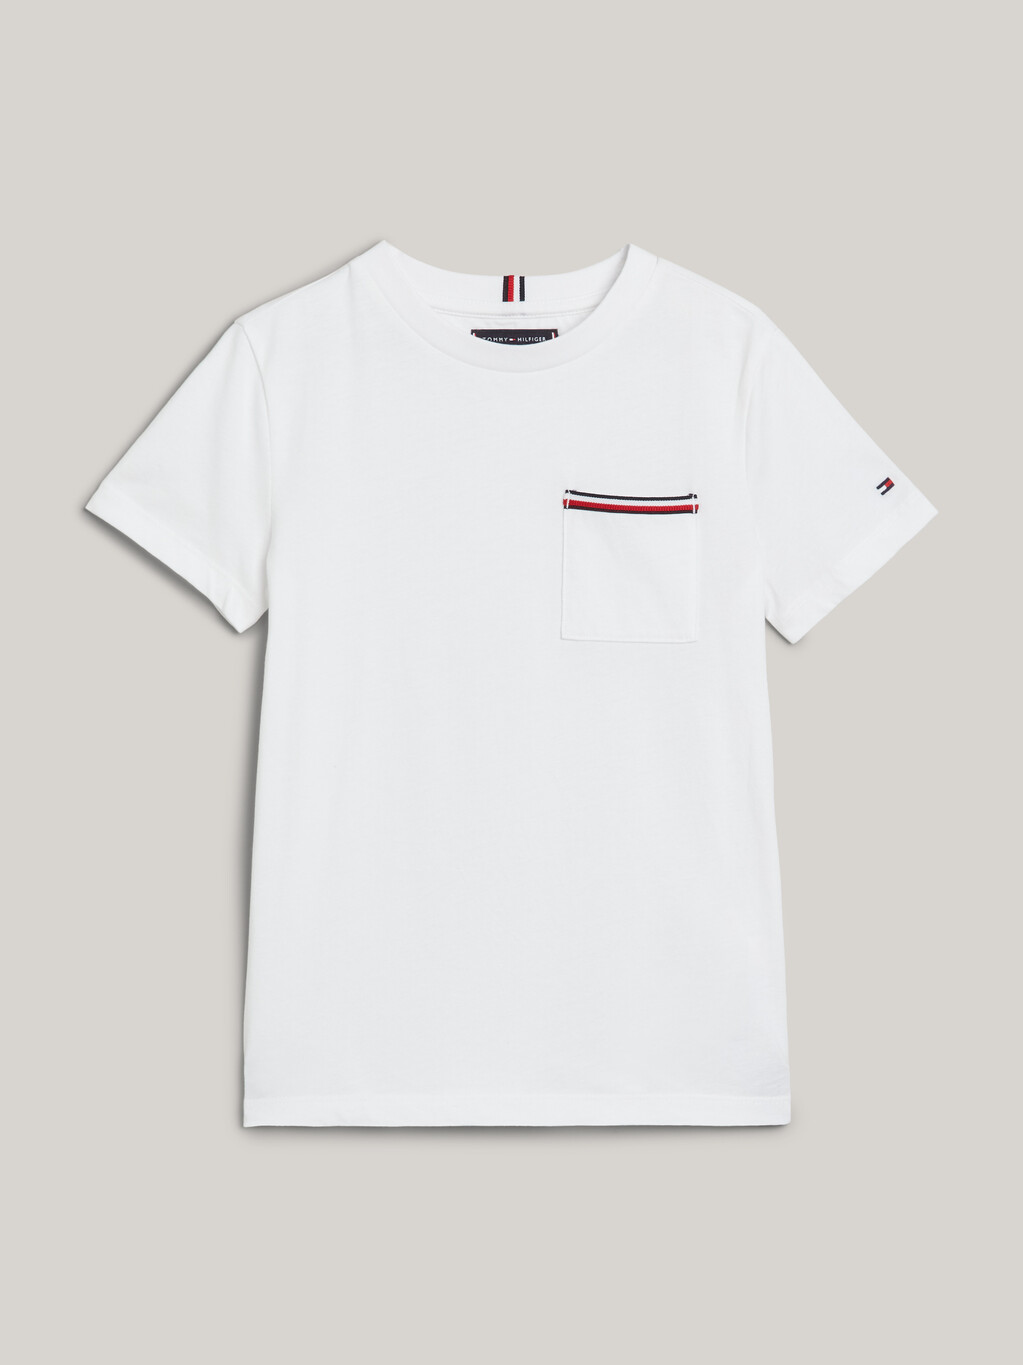 Patch Pocket Signature Detail T-Shirt, White, hi-res